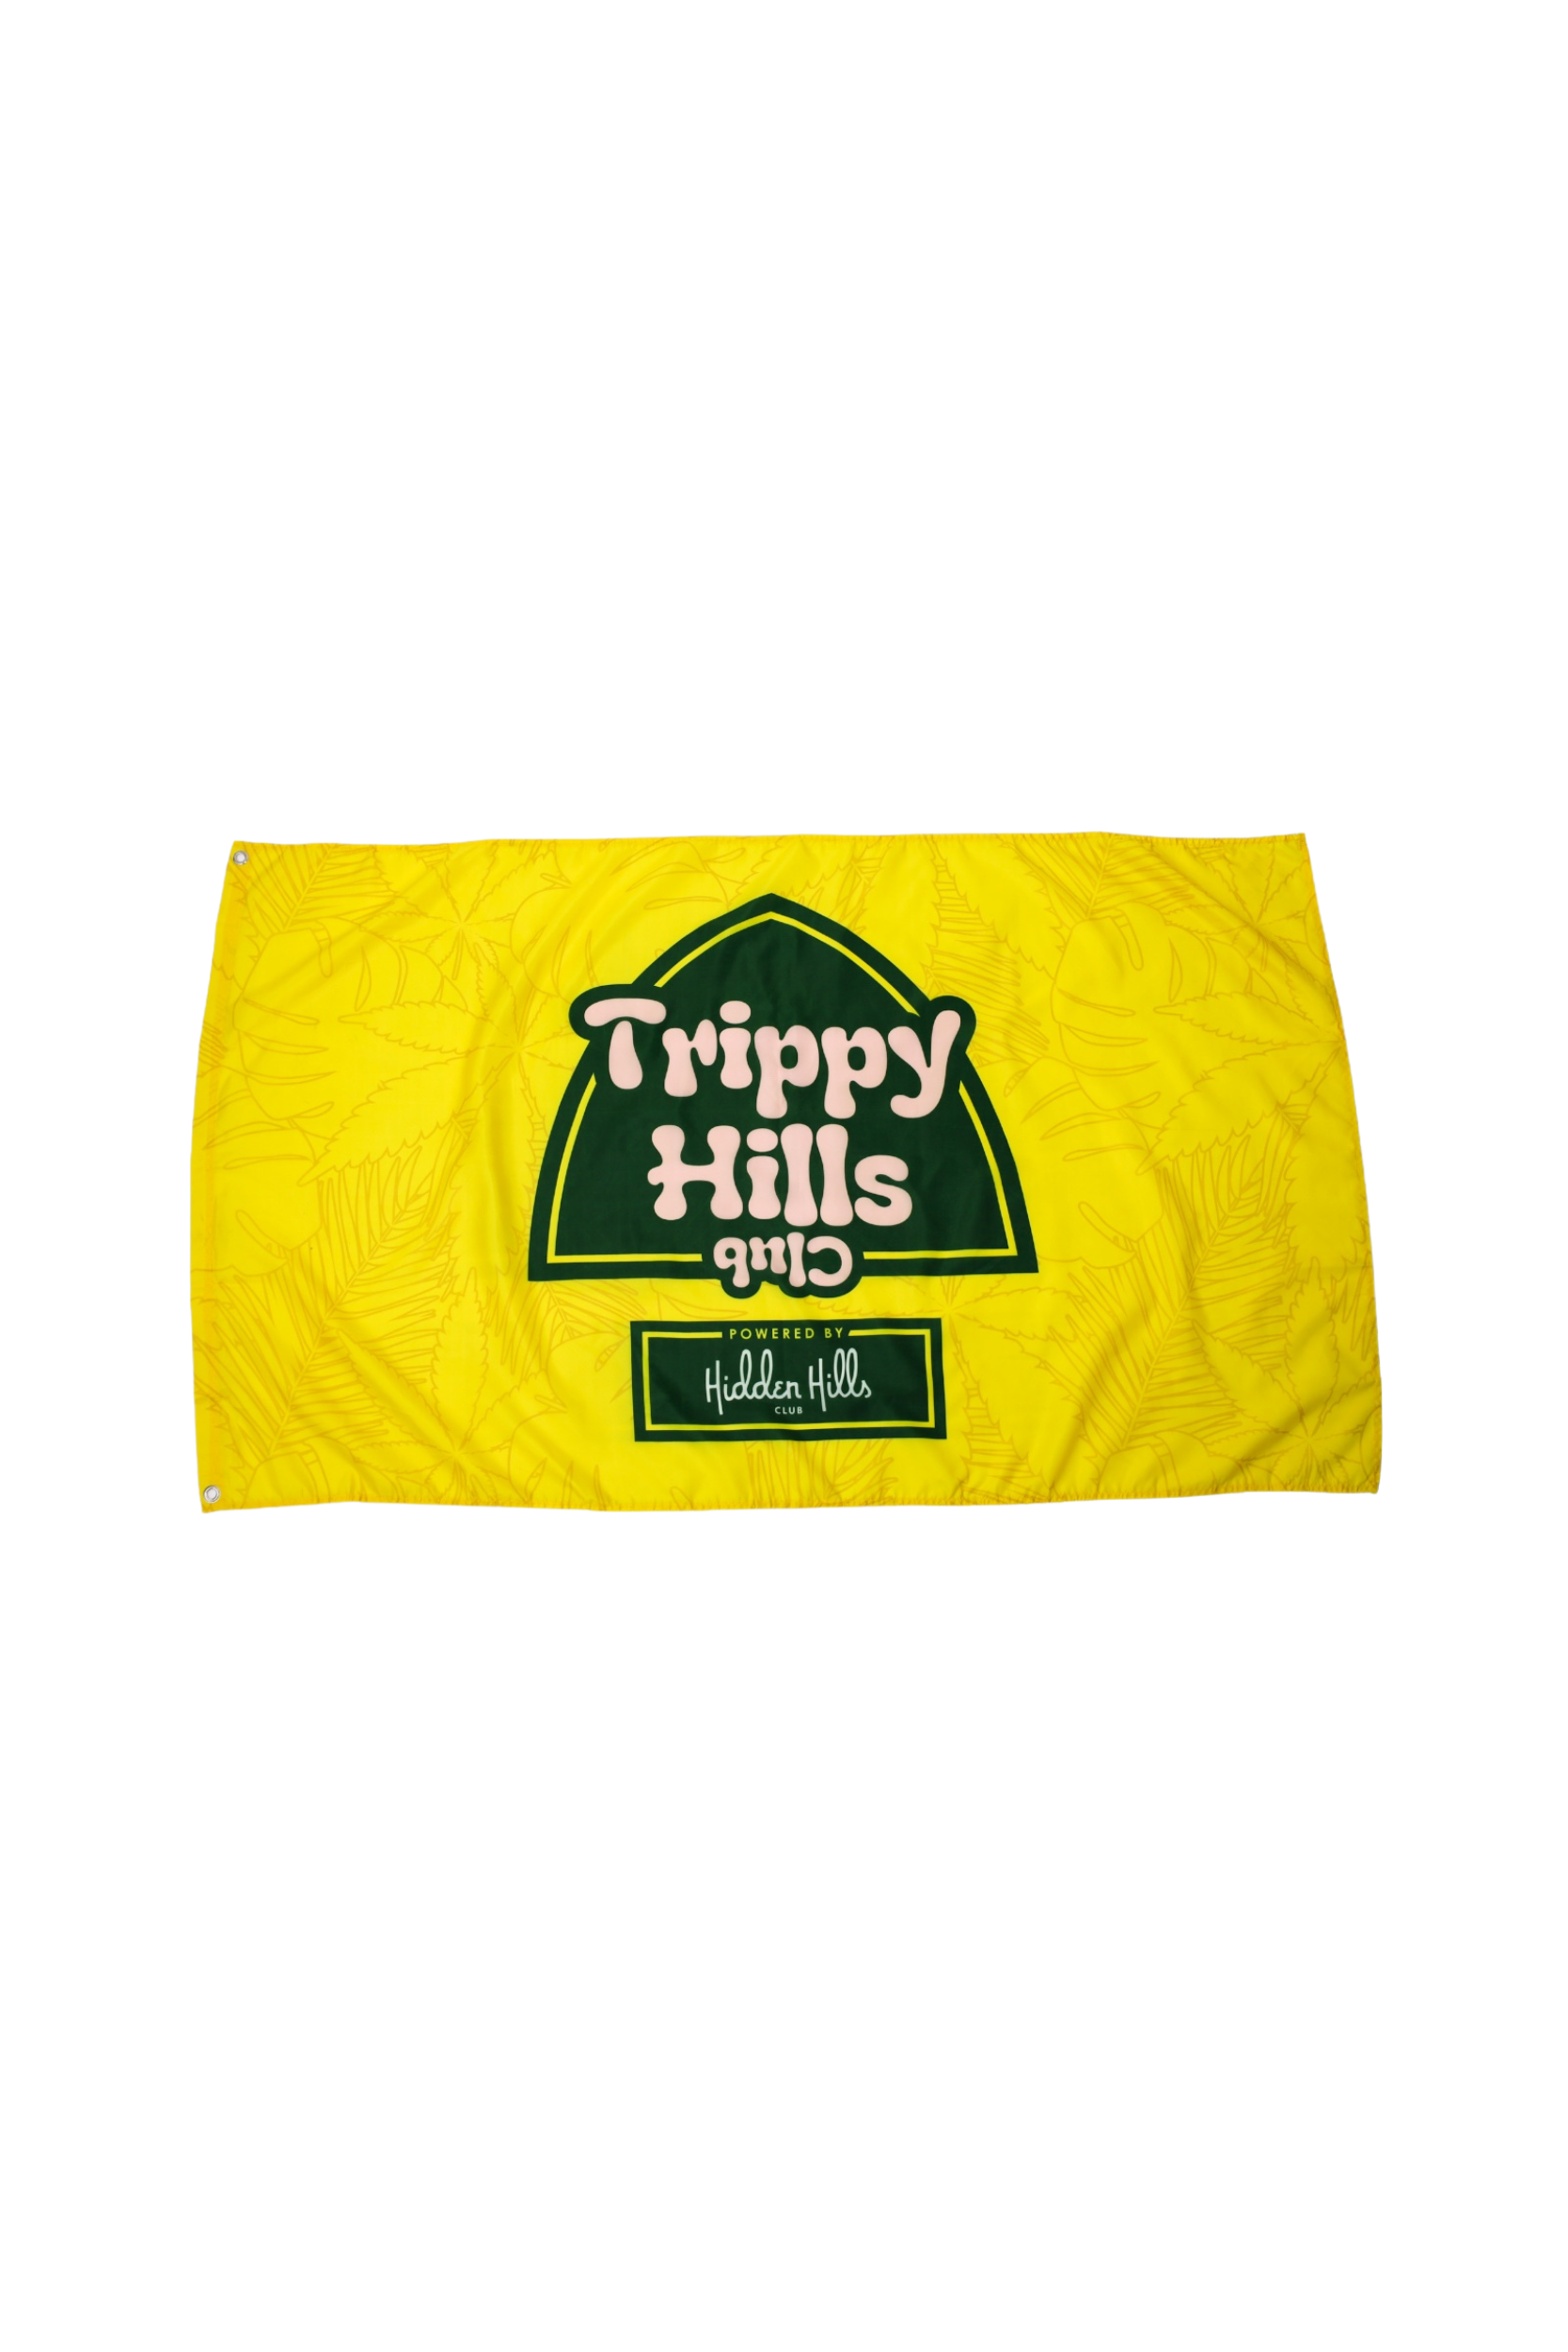 Trippy Hills Flag